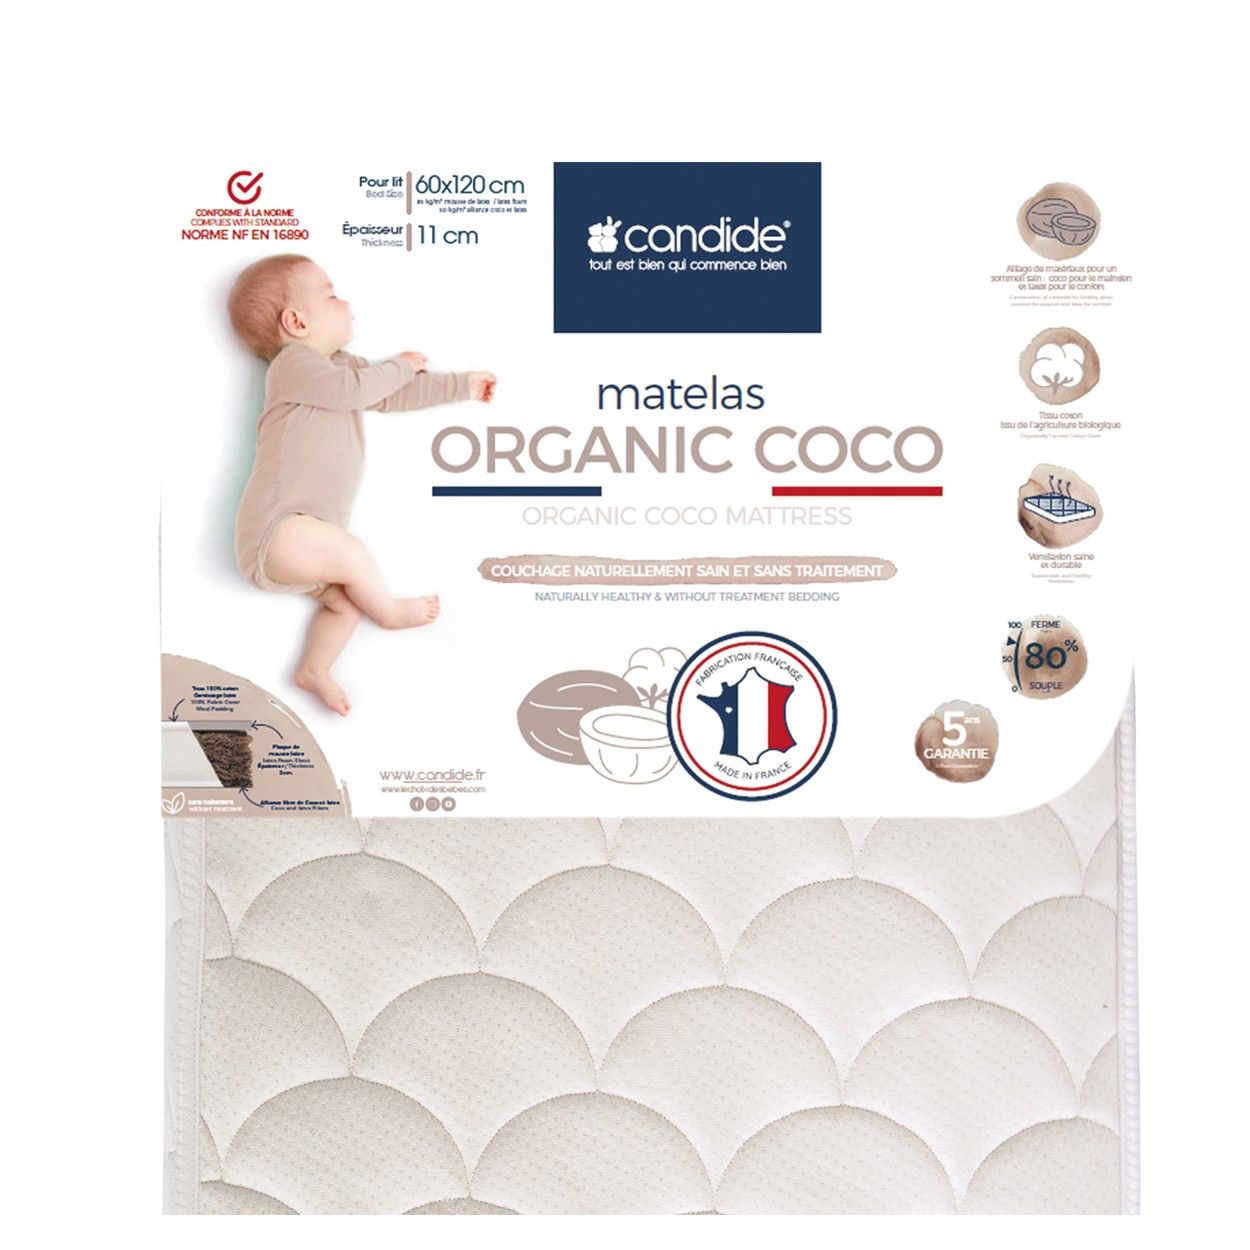 Matelas Bébé 70x140x11cm Organic Coco - Sans Traitement - Ferme - Tissu Coton Bio - Fabriqué En France - Garantie 5 Ans